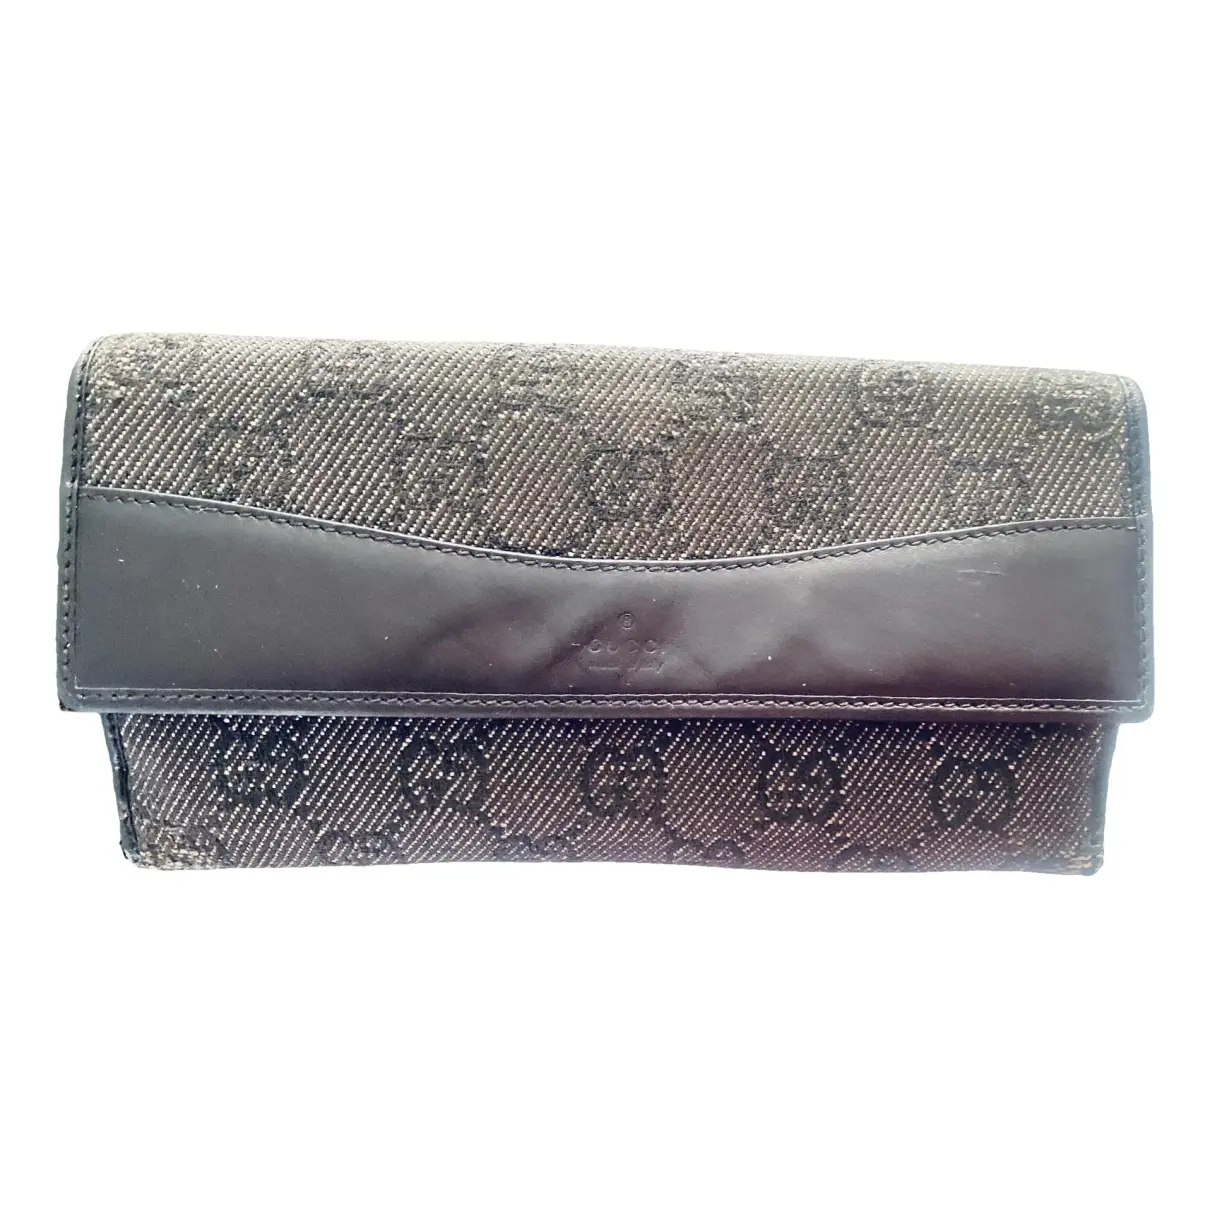 Neo Vintage cloth wallet